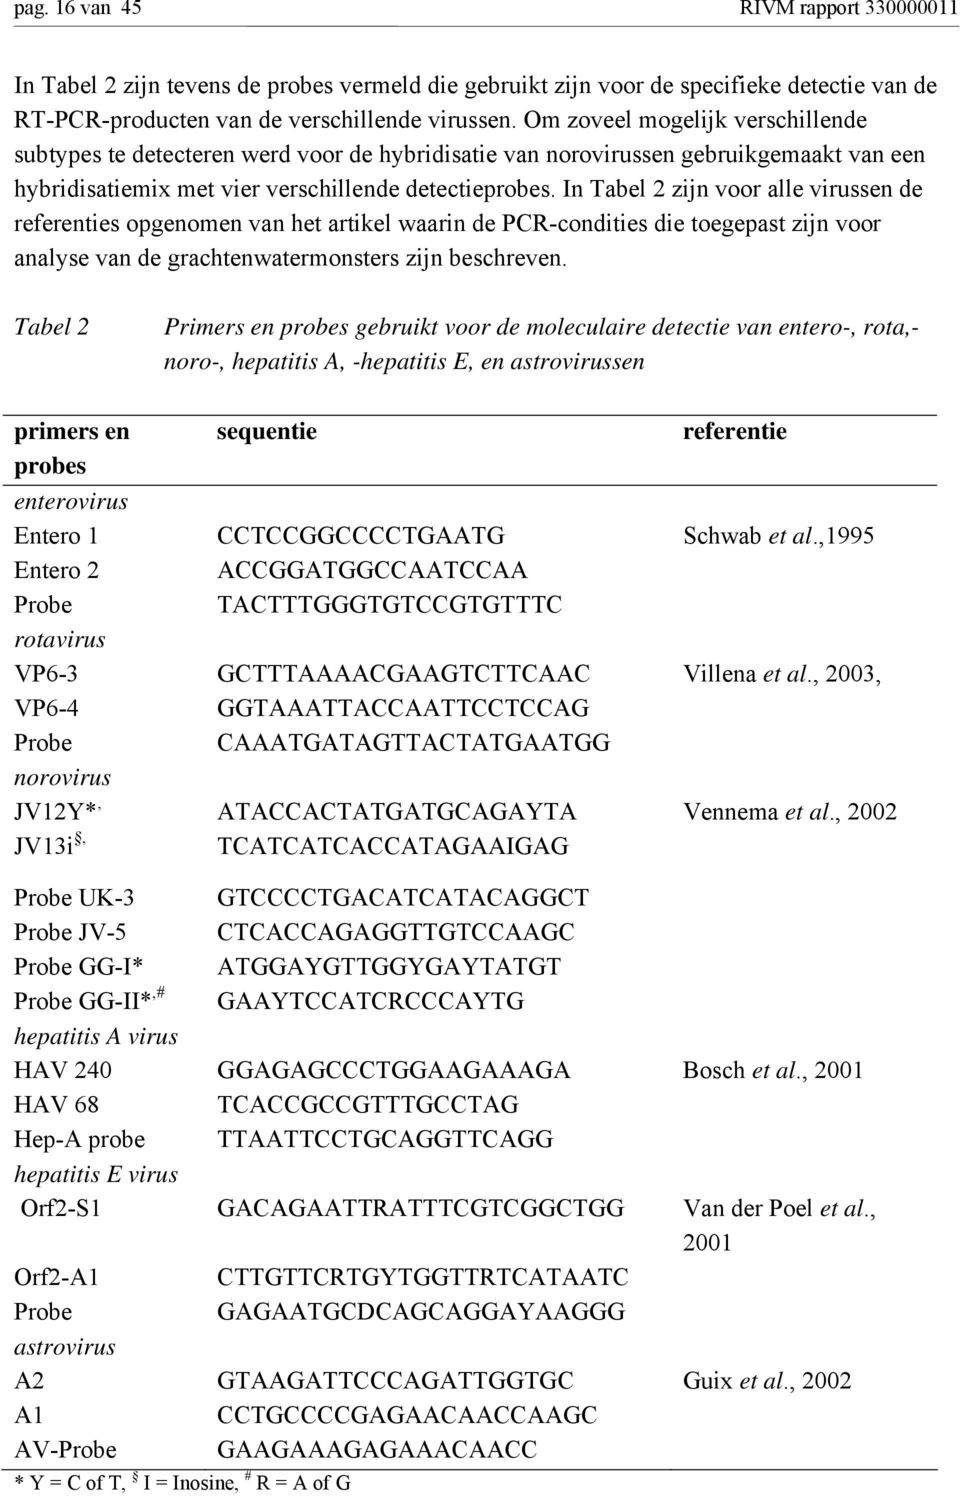 In Tabel 2 zijn voor alle virussen de referenties opgenomen van het artikel waarin de PCR-condities die toegepast zijn voor analyse van de grachtenwatermonsters zijn beschreven.